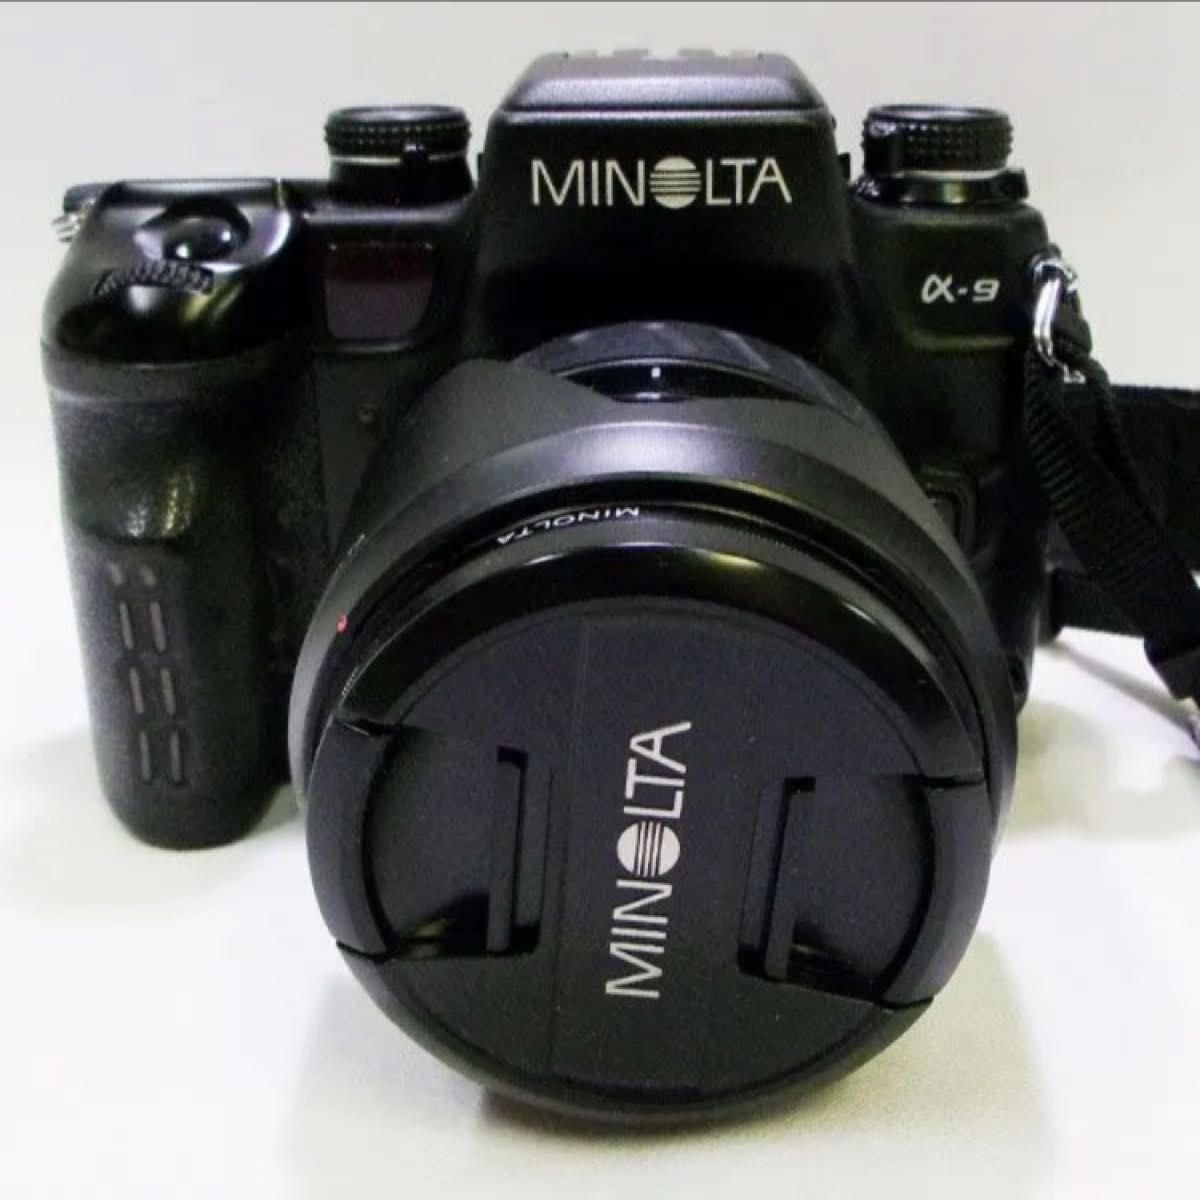 MINOLTA ミノルタ α-9 フィルム カメラ レンズ AF 24-85